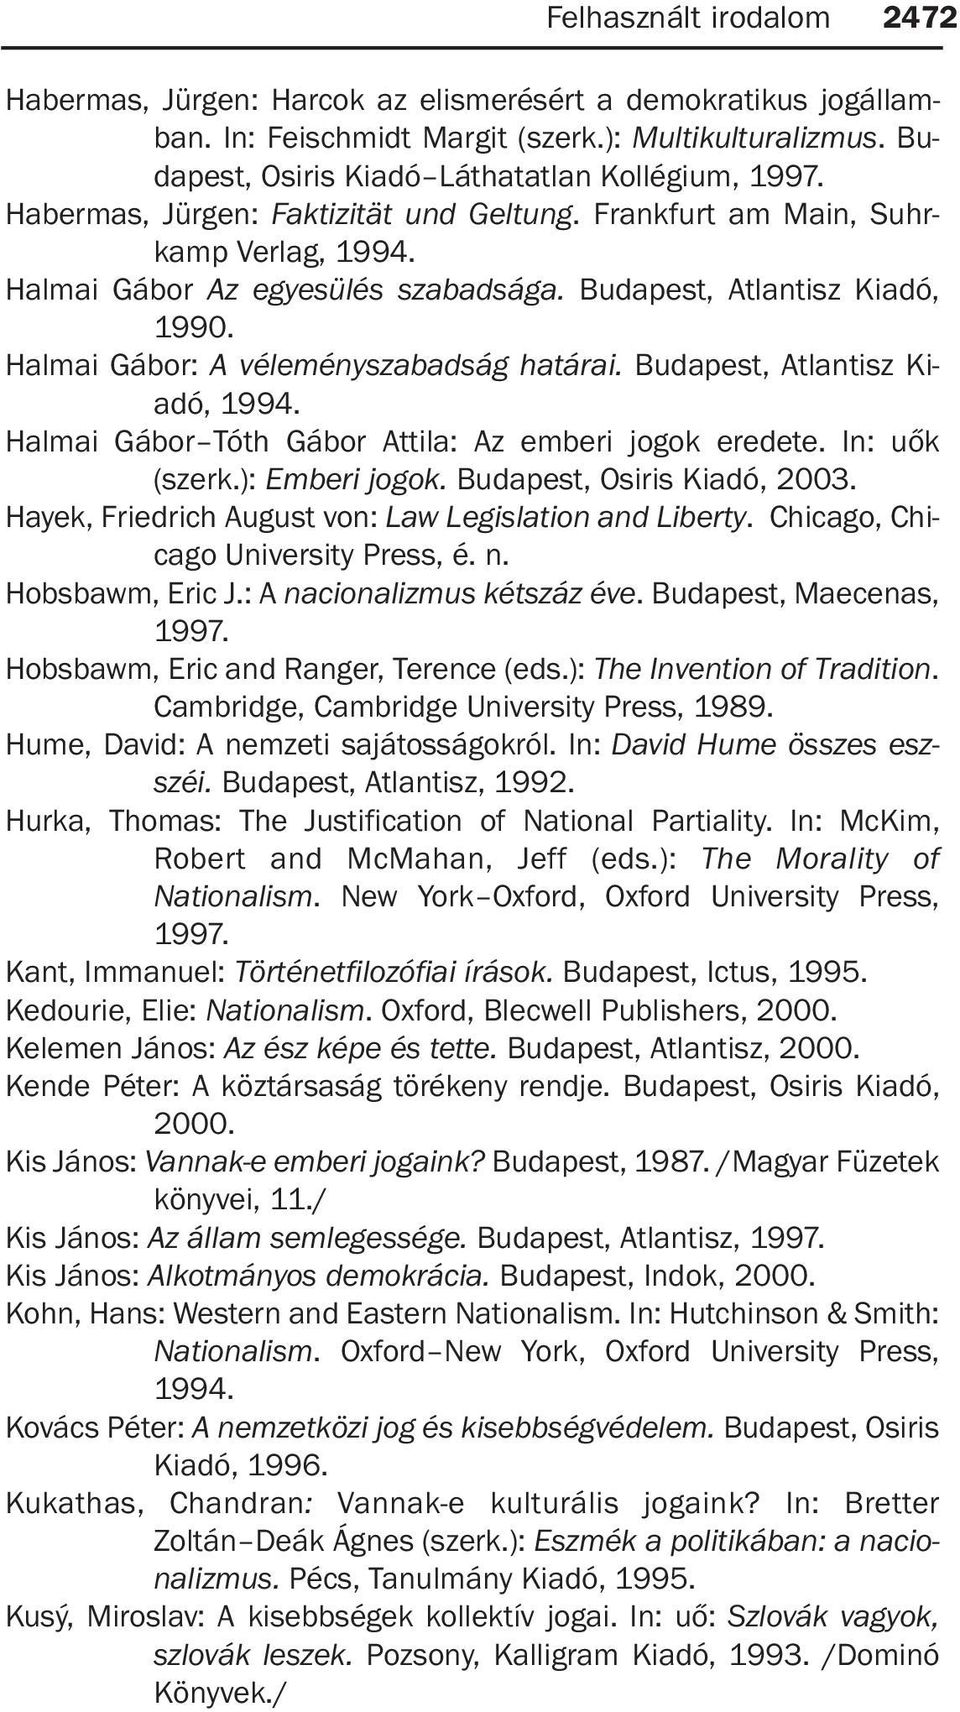 Halmai Gábor: A véleményszabadság határai. Budapest, Atlantisz Kiadó, 1994. Halmai Gábor Tóth Gábor Attila: Az emberi jogok eredete. In: uõk (szerk.): Emberi jogok. Budapest, Osiris Kiadó, 2003.